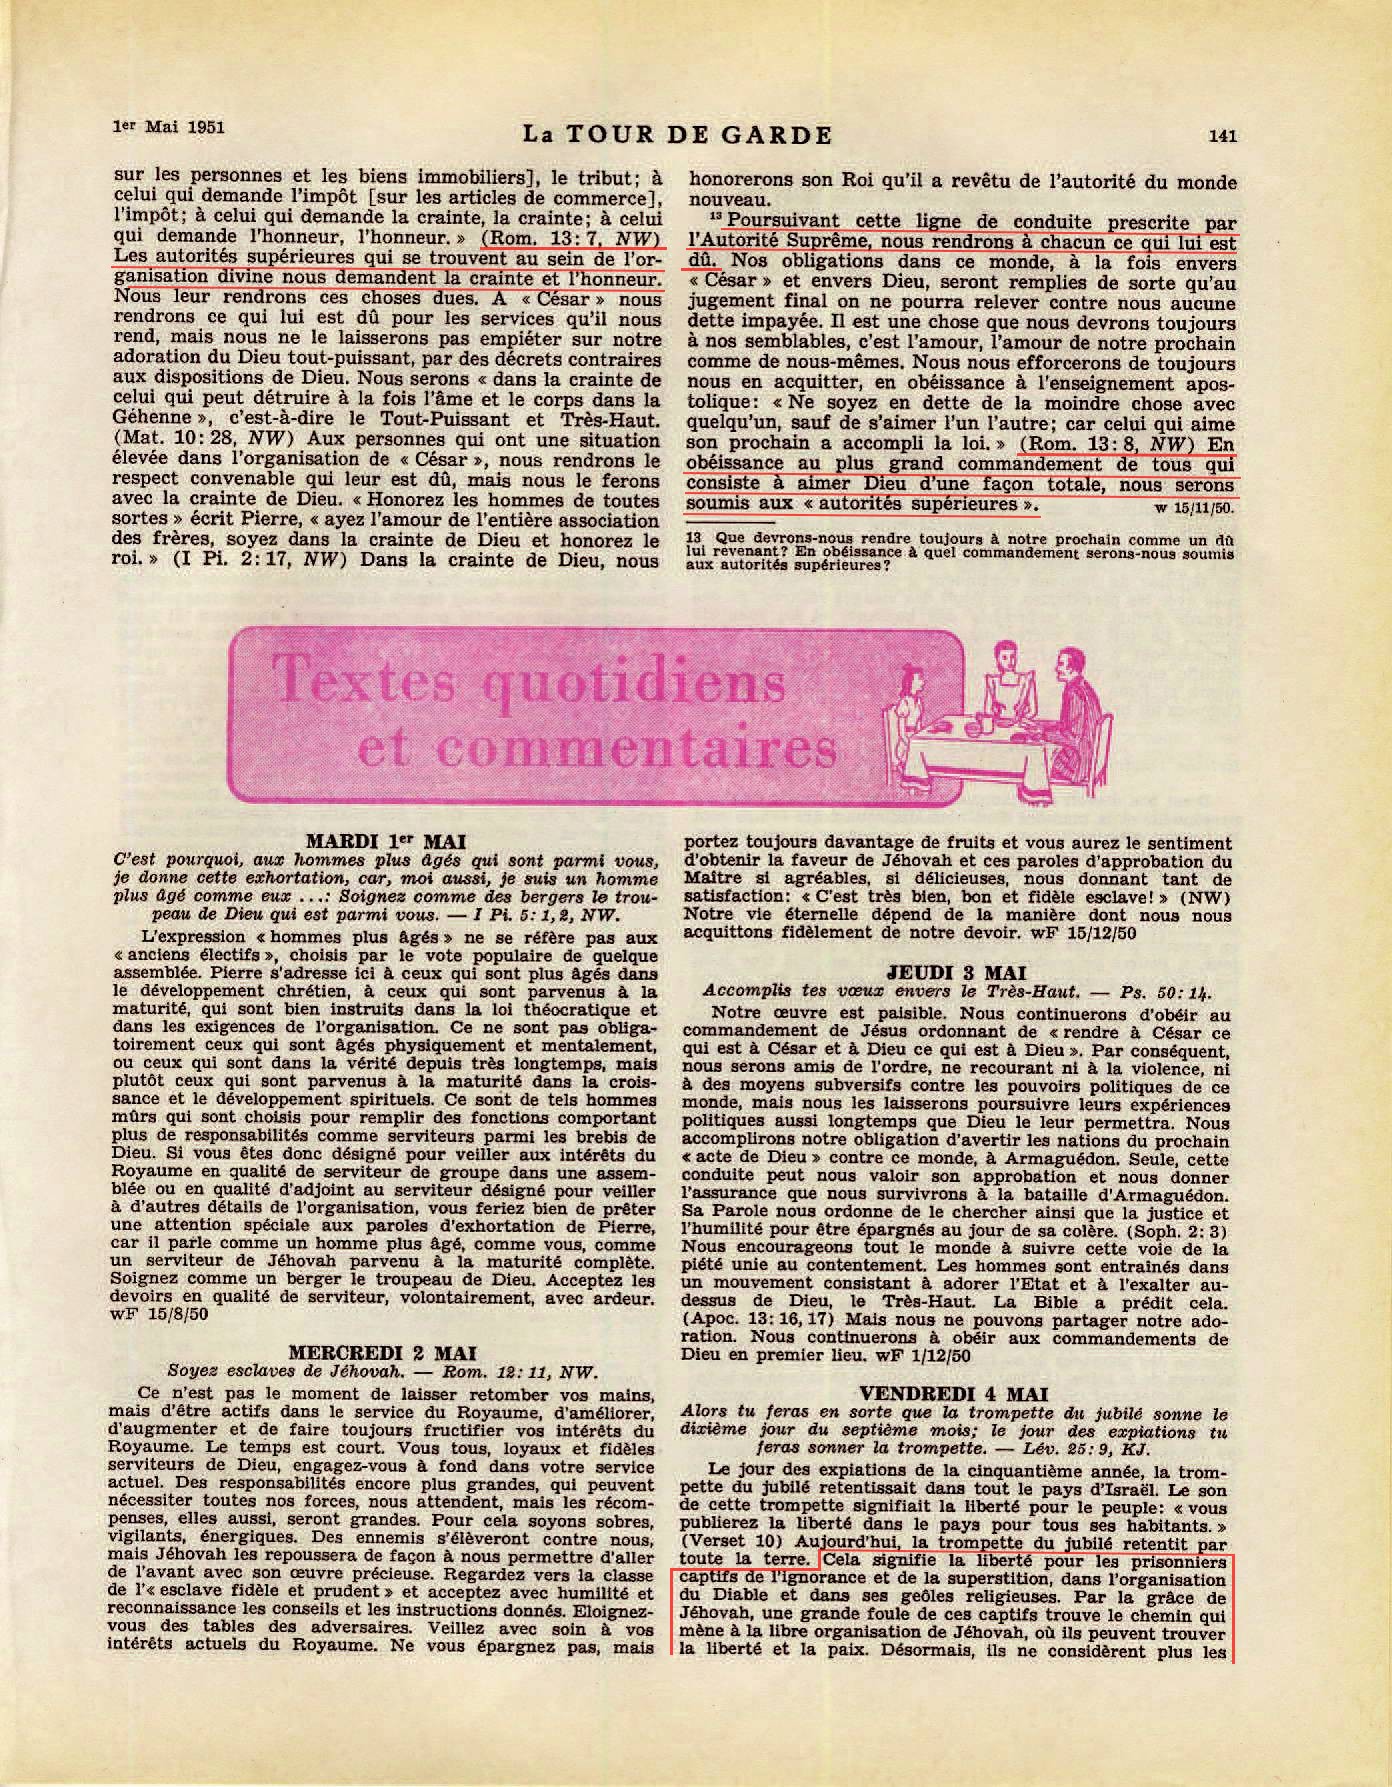 Les autorités supérieures  - Page 2 La-Tour-de-Garde-1-mai-1951-p141